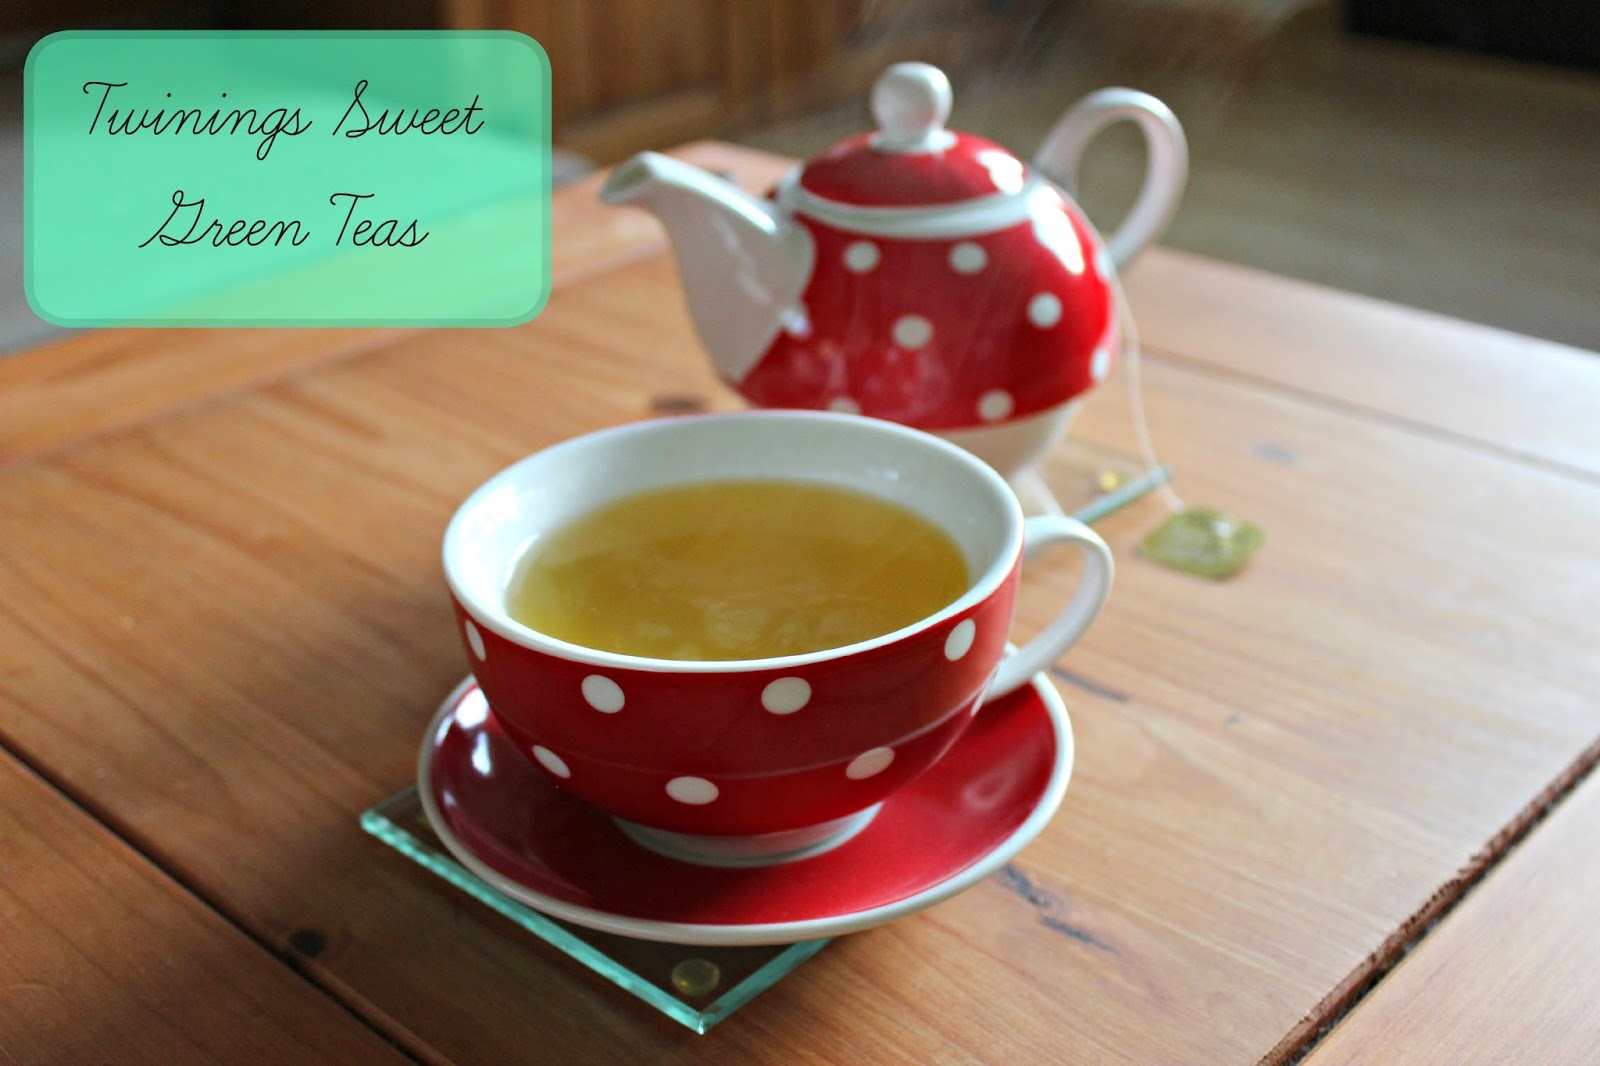 Twinings Sweet Green Teas!